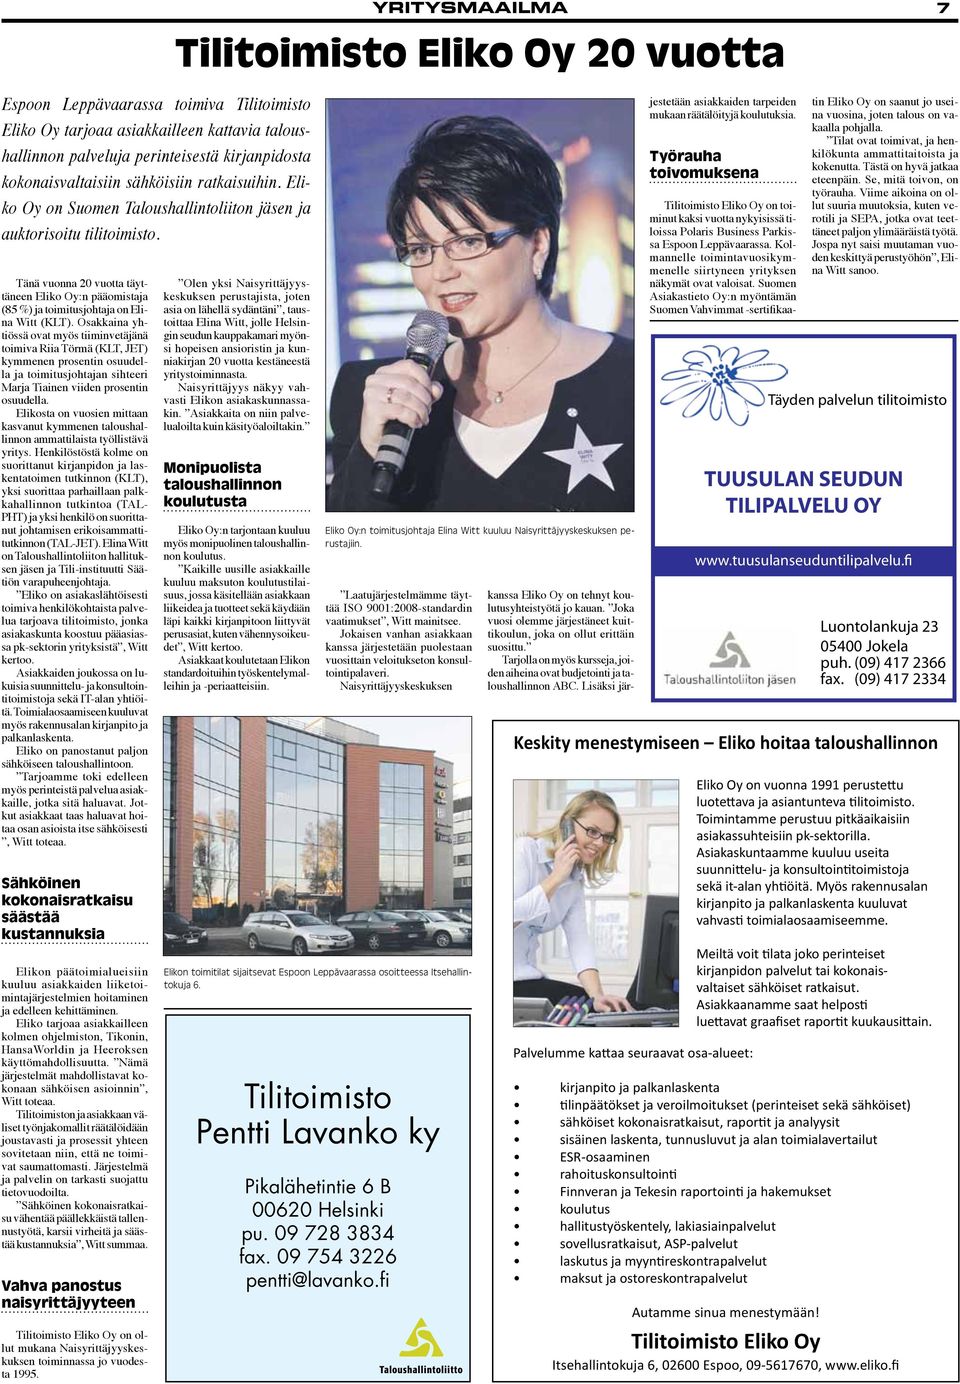 Osakkaina yhtiössä ovat myös tiiminvetäjänä toimiva Riia Törmä (KLT, JET) kymmenen prosentin osuudella ja toimitusjohtajan sihteeri Marja Tiainen viiden prosentin osuudella.